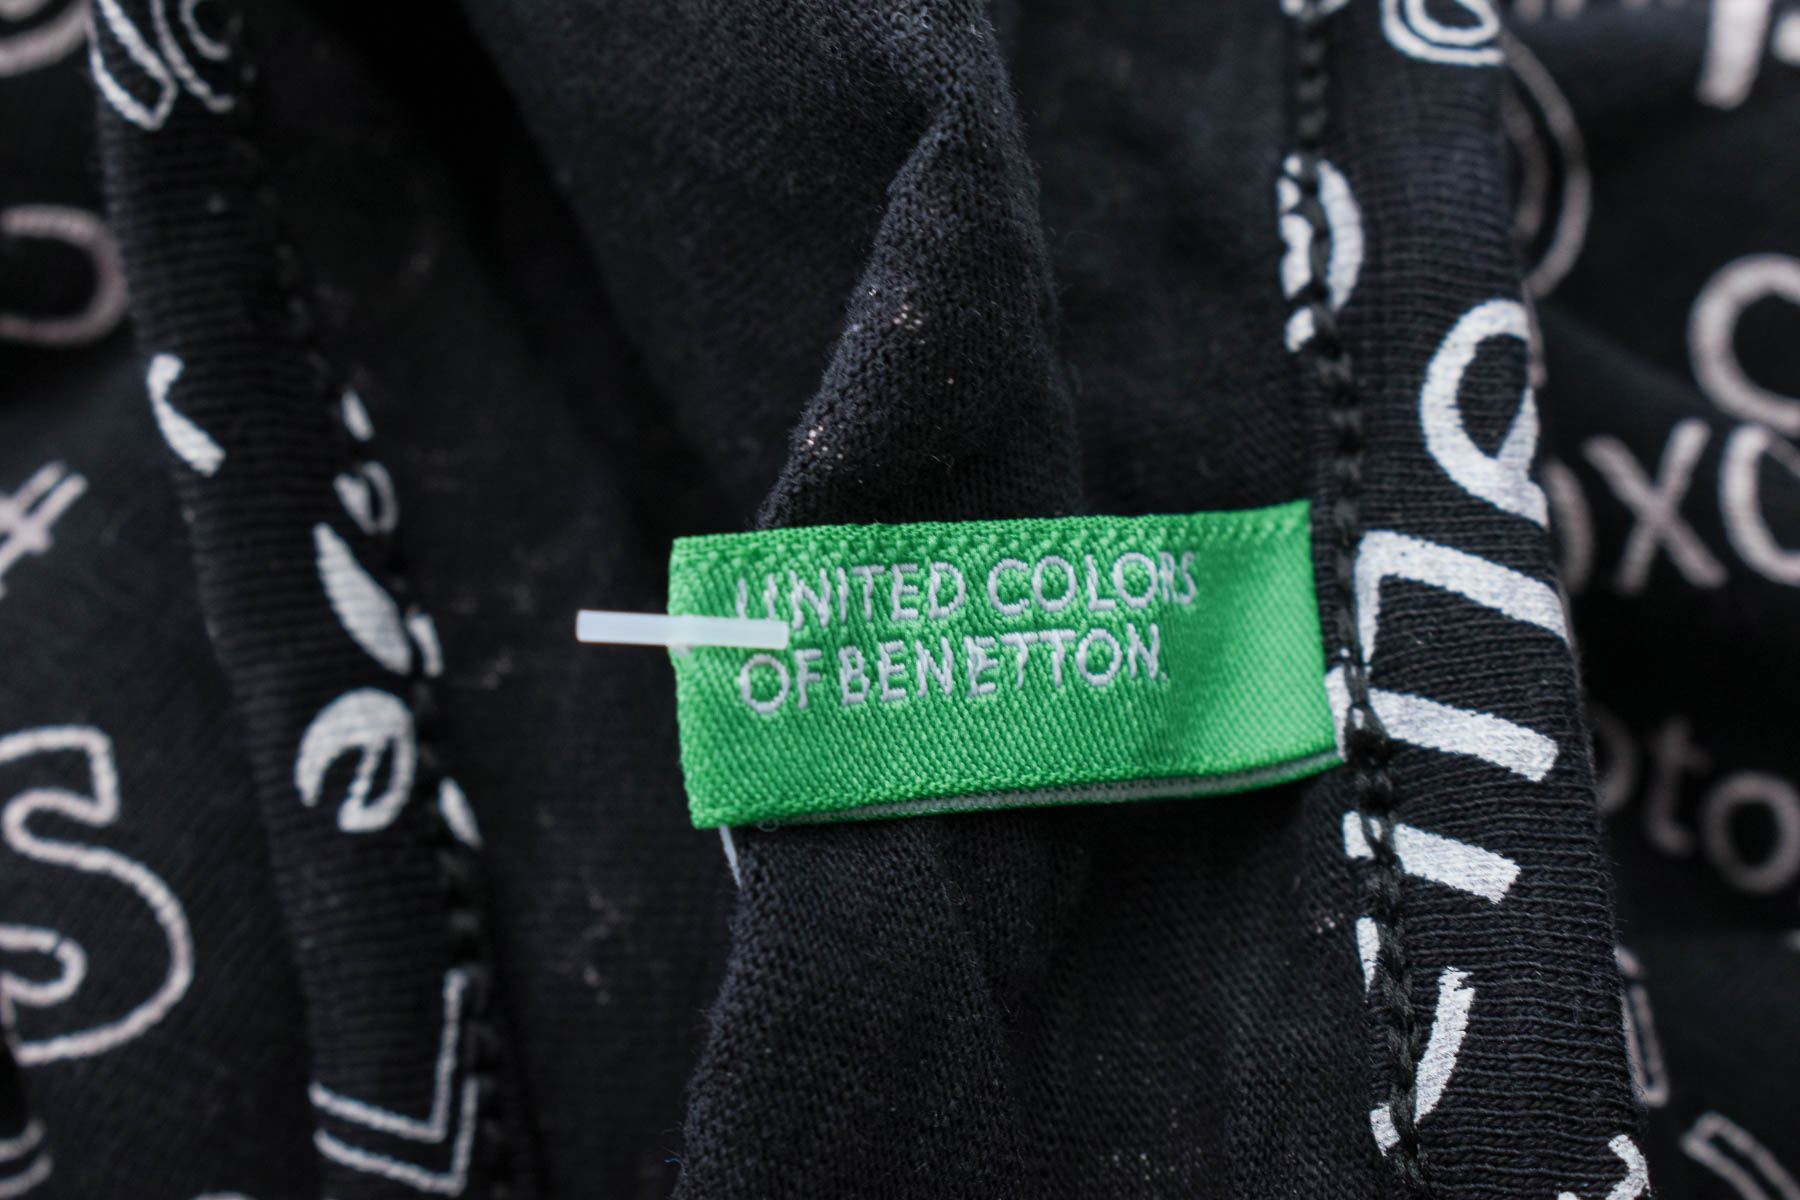 Bluzka dla dziewczynki - United Colors of Benetton - 2